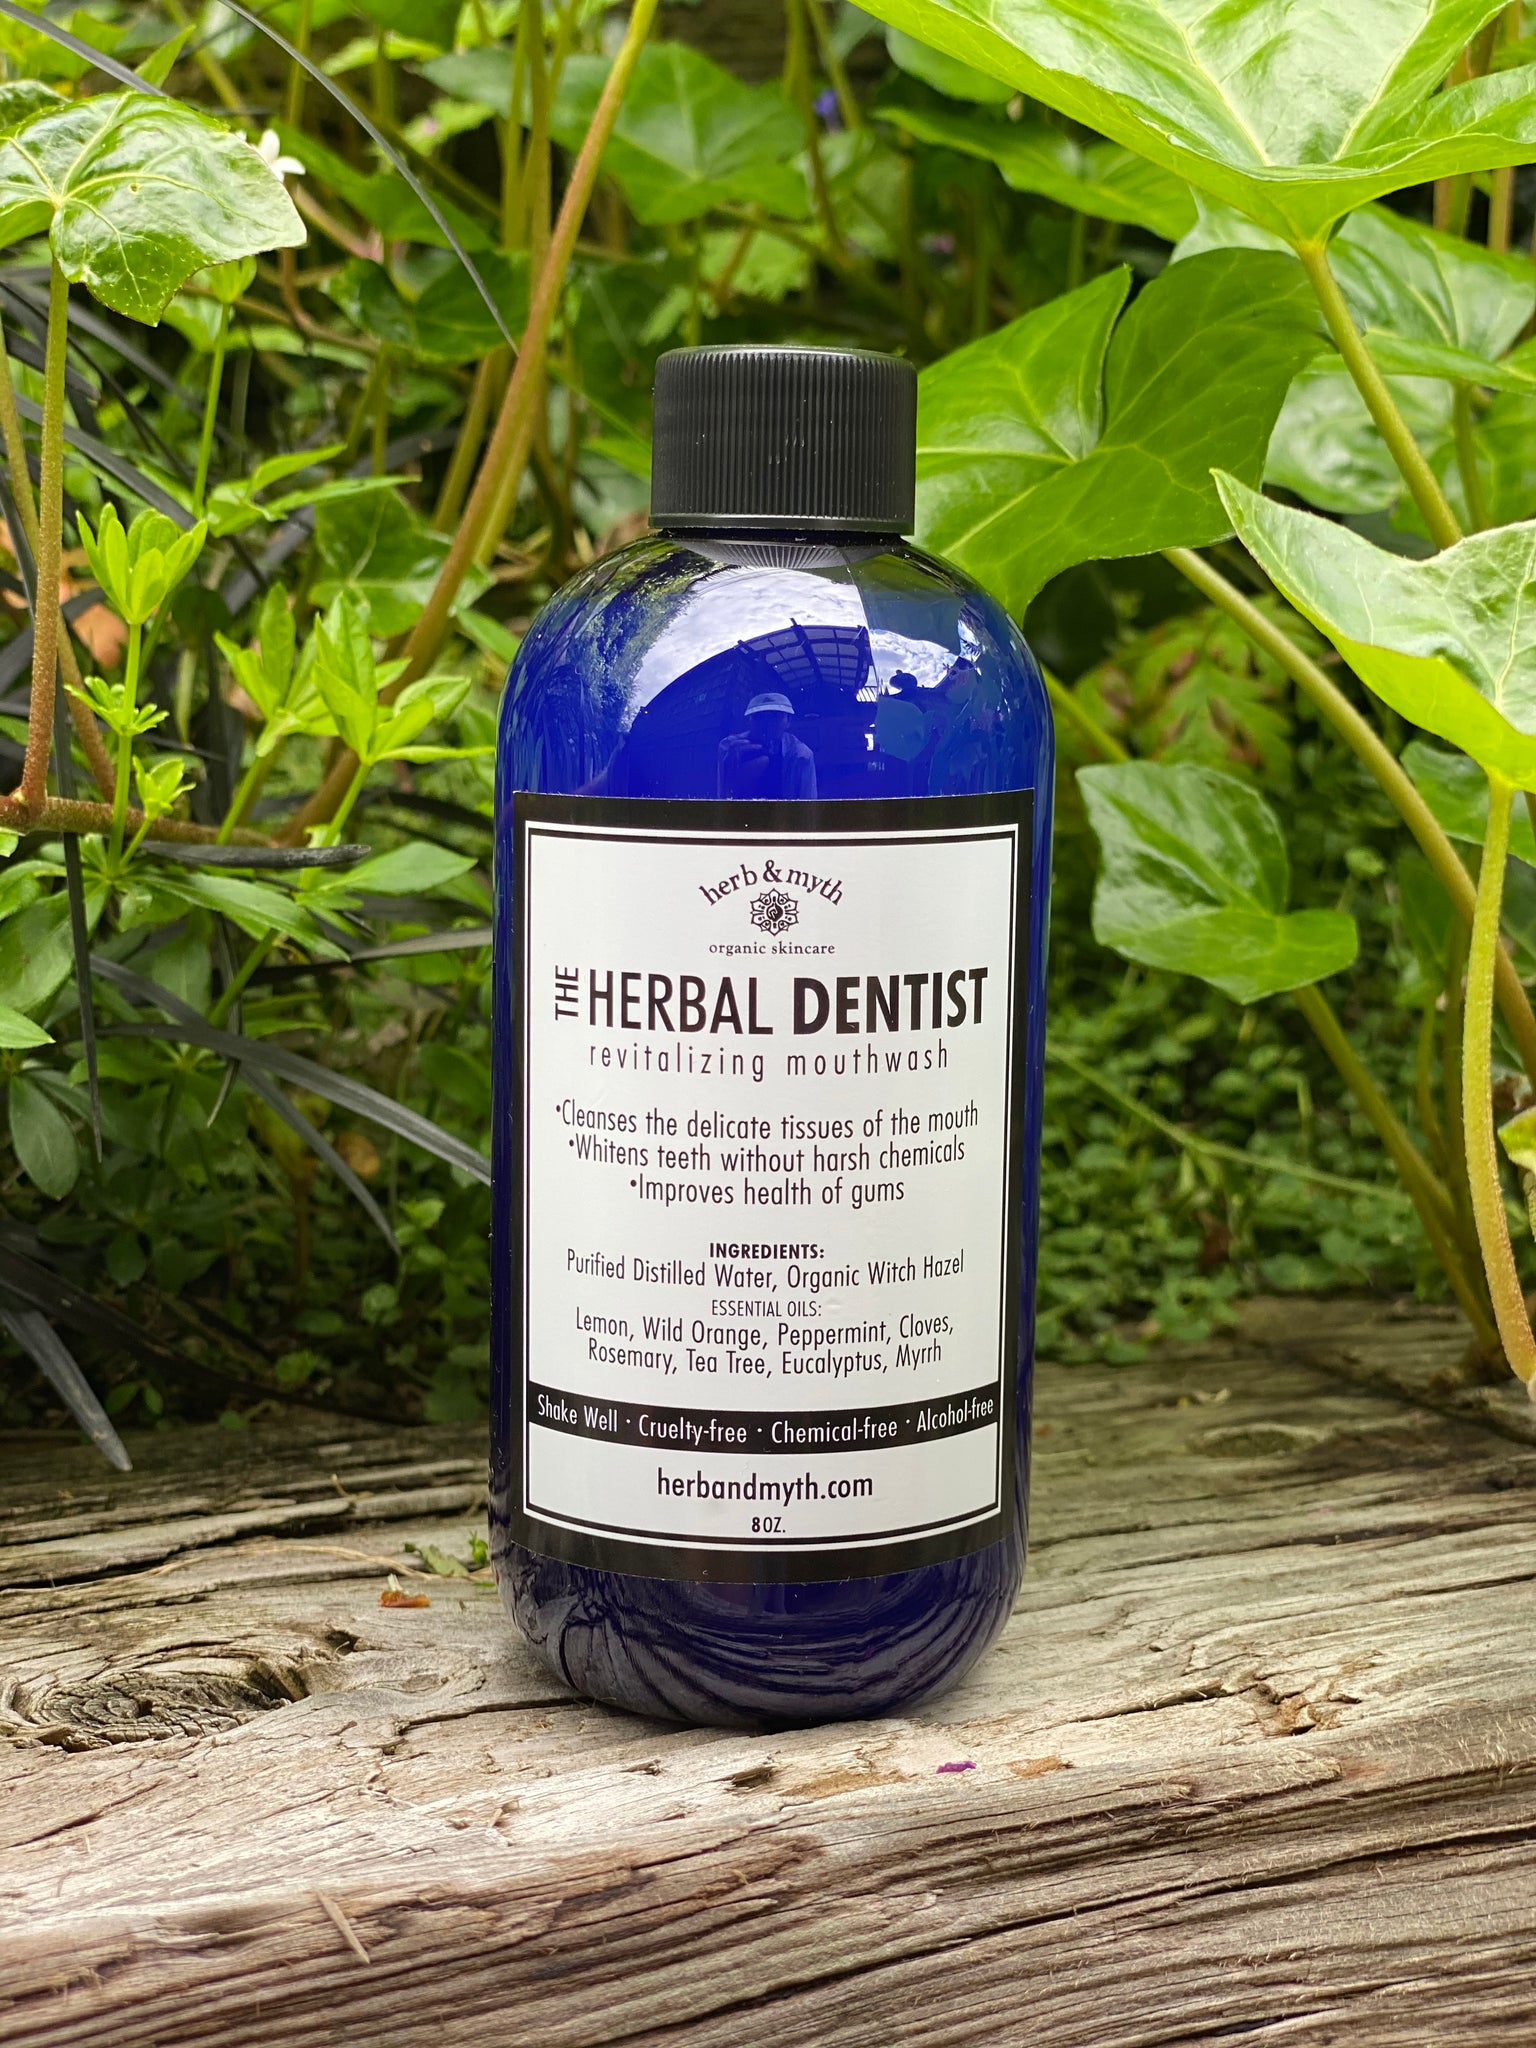 The Herbal Dentist Mouthwash (Cobalt Blue Plastic Bottle)